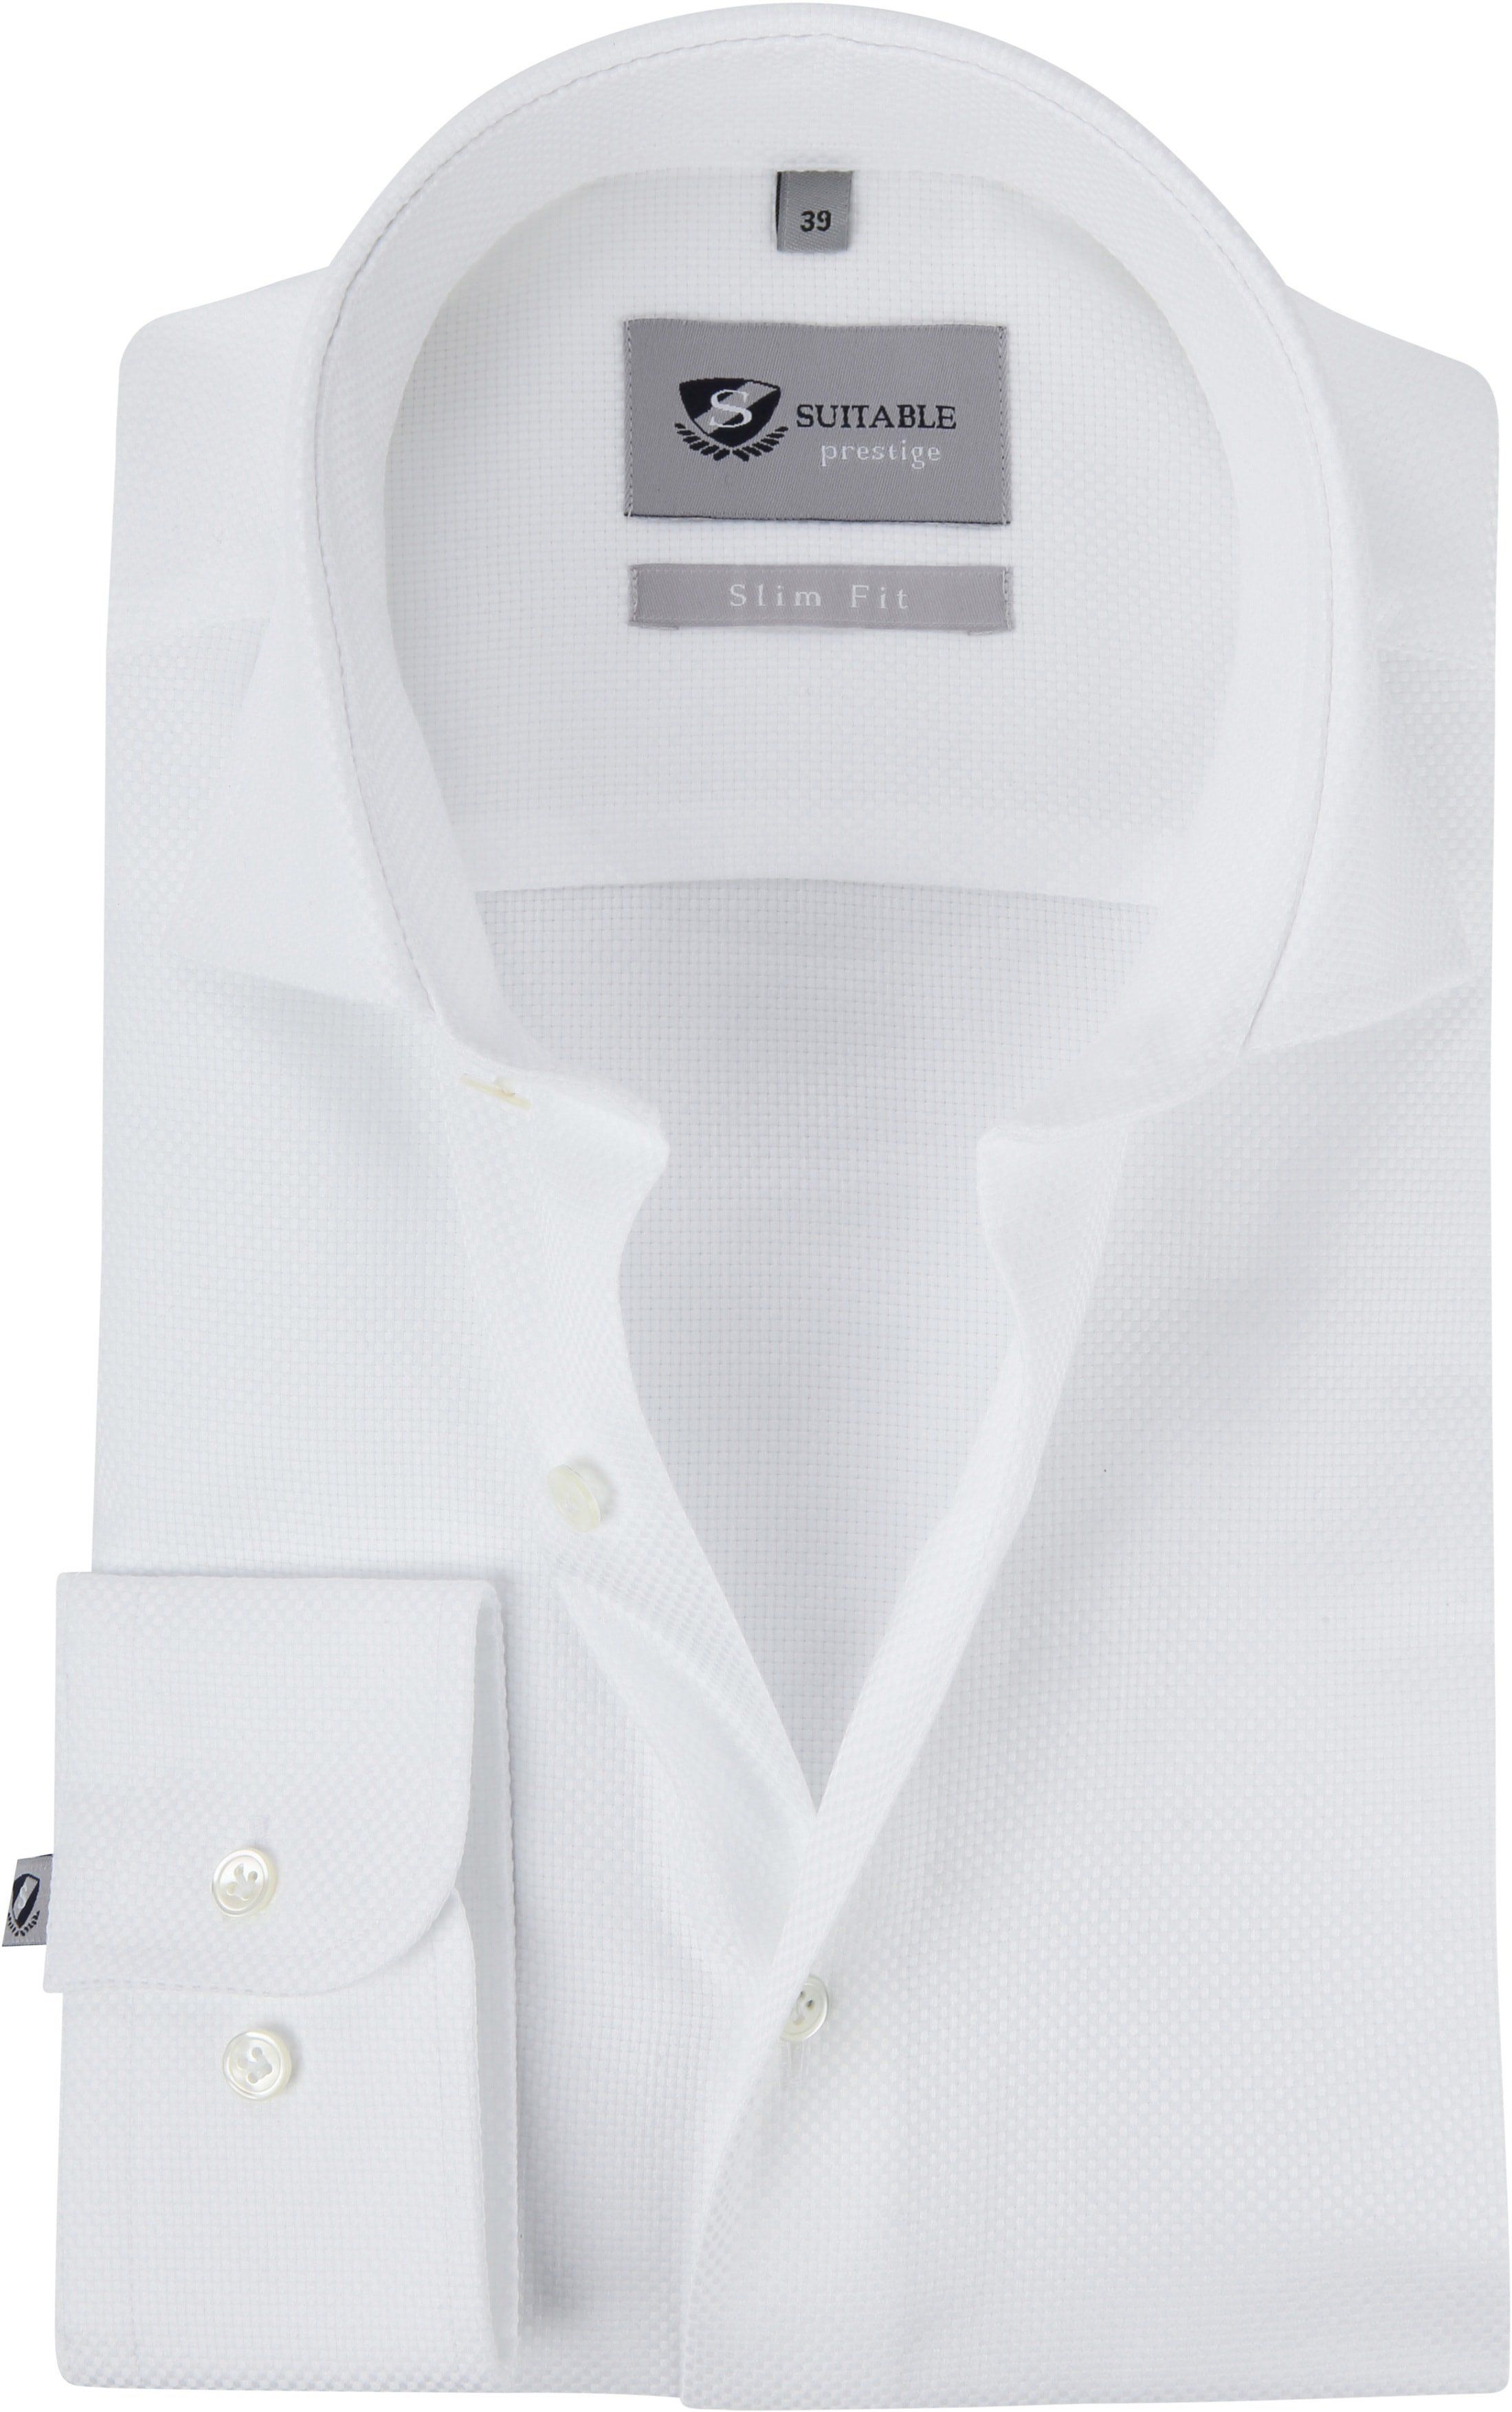 Suitable Prestige Shirt Albini White size 15 3/4